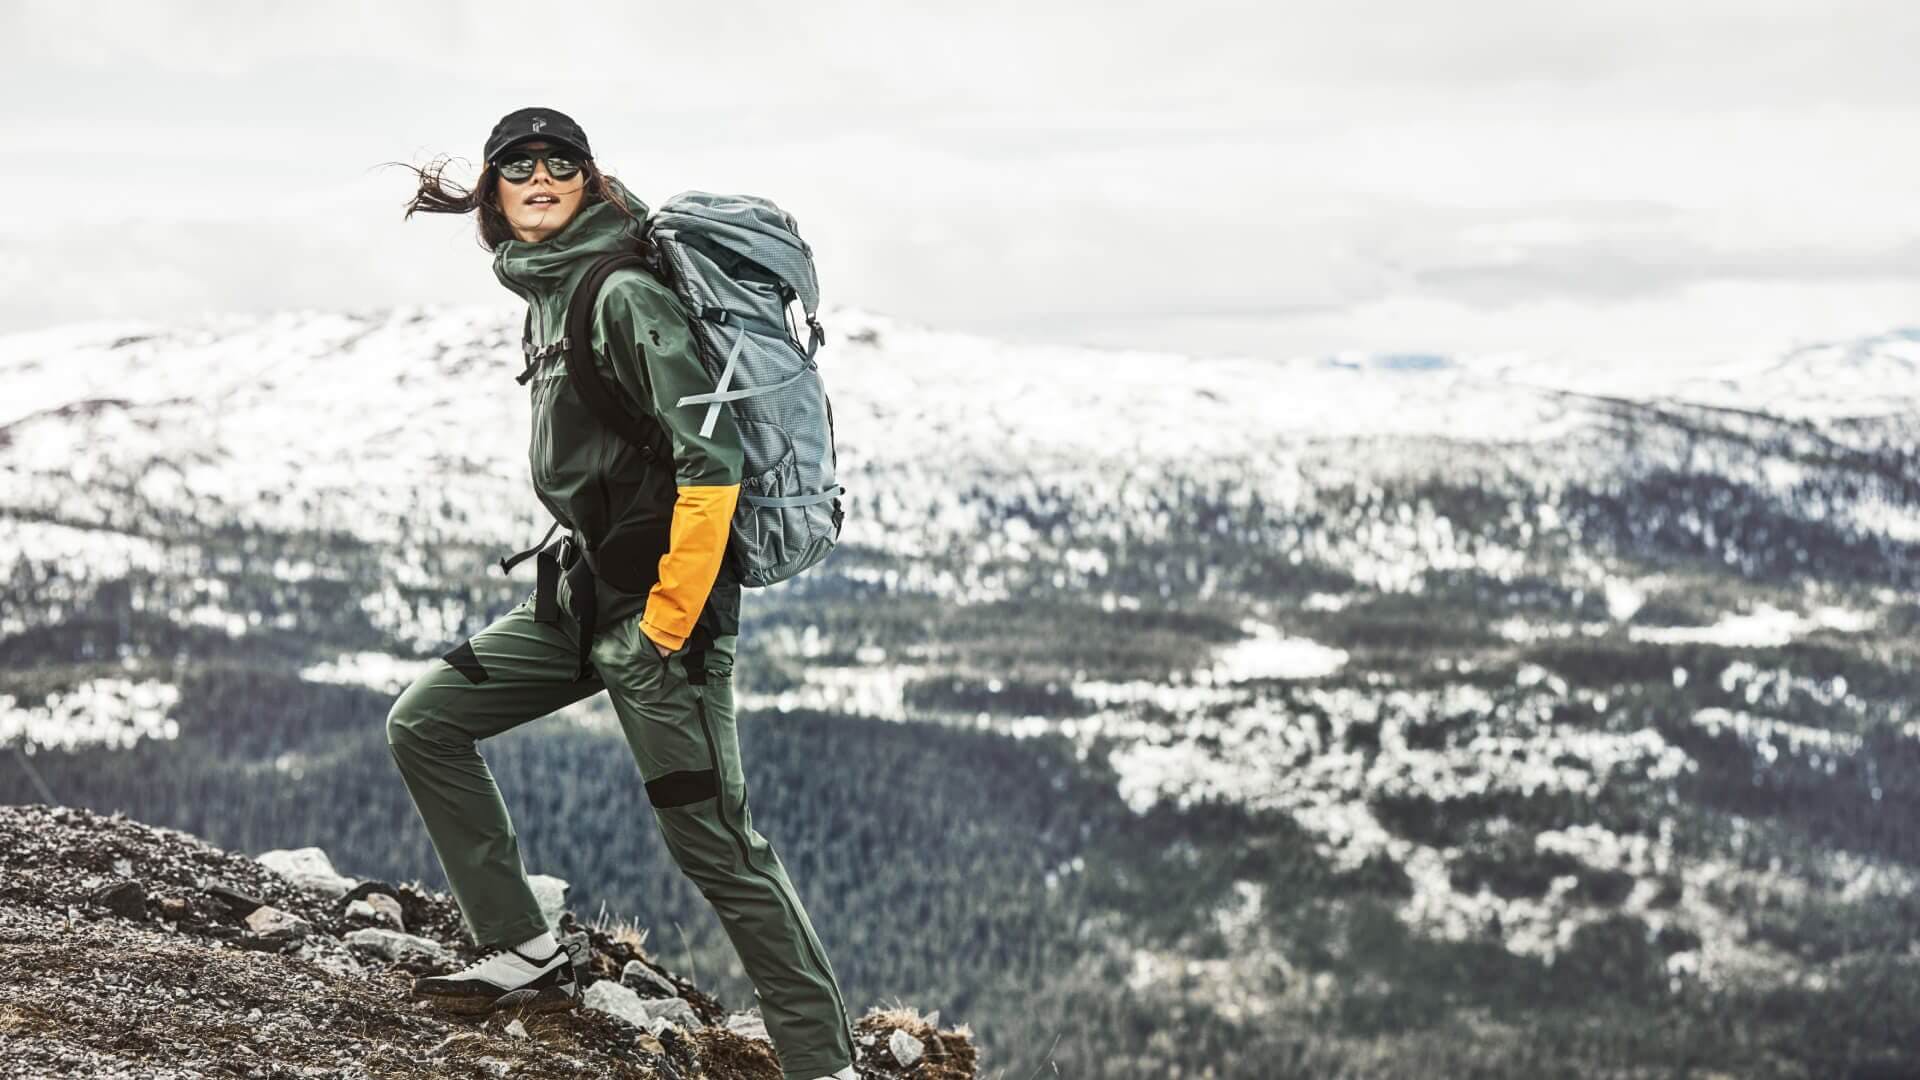 Mens Trek Dept, Men's Hiking Clothing